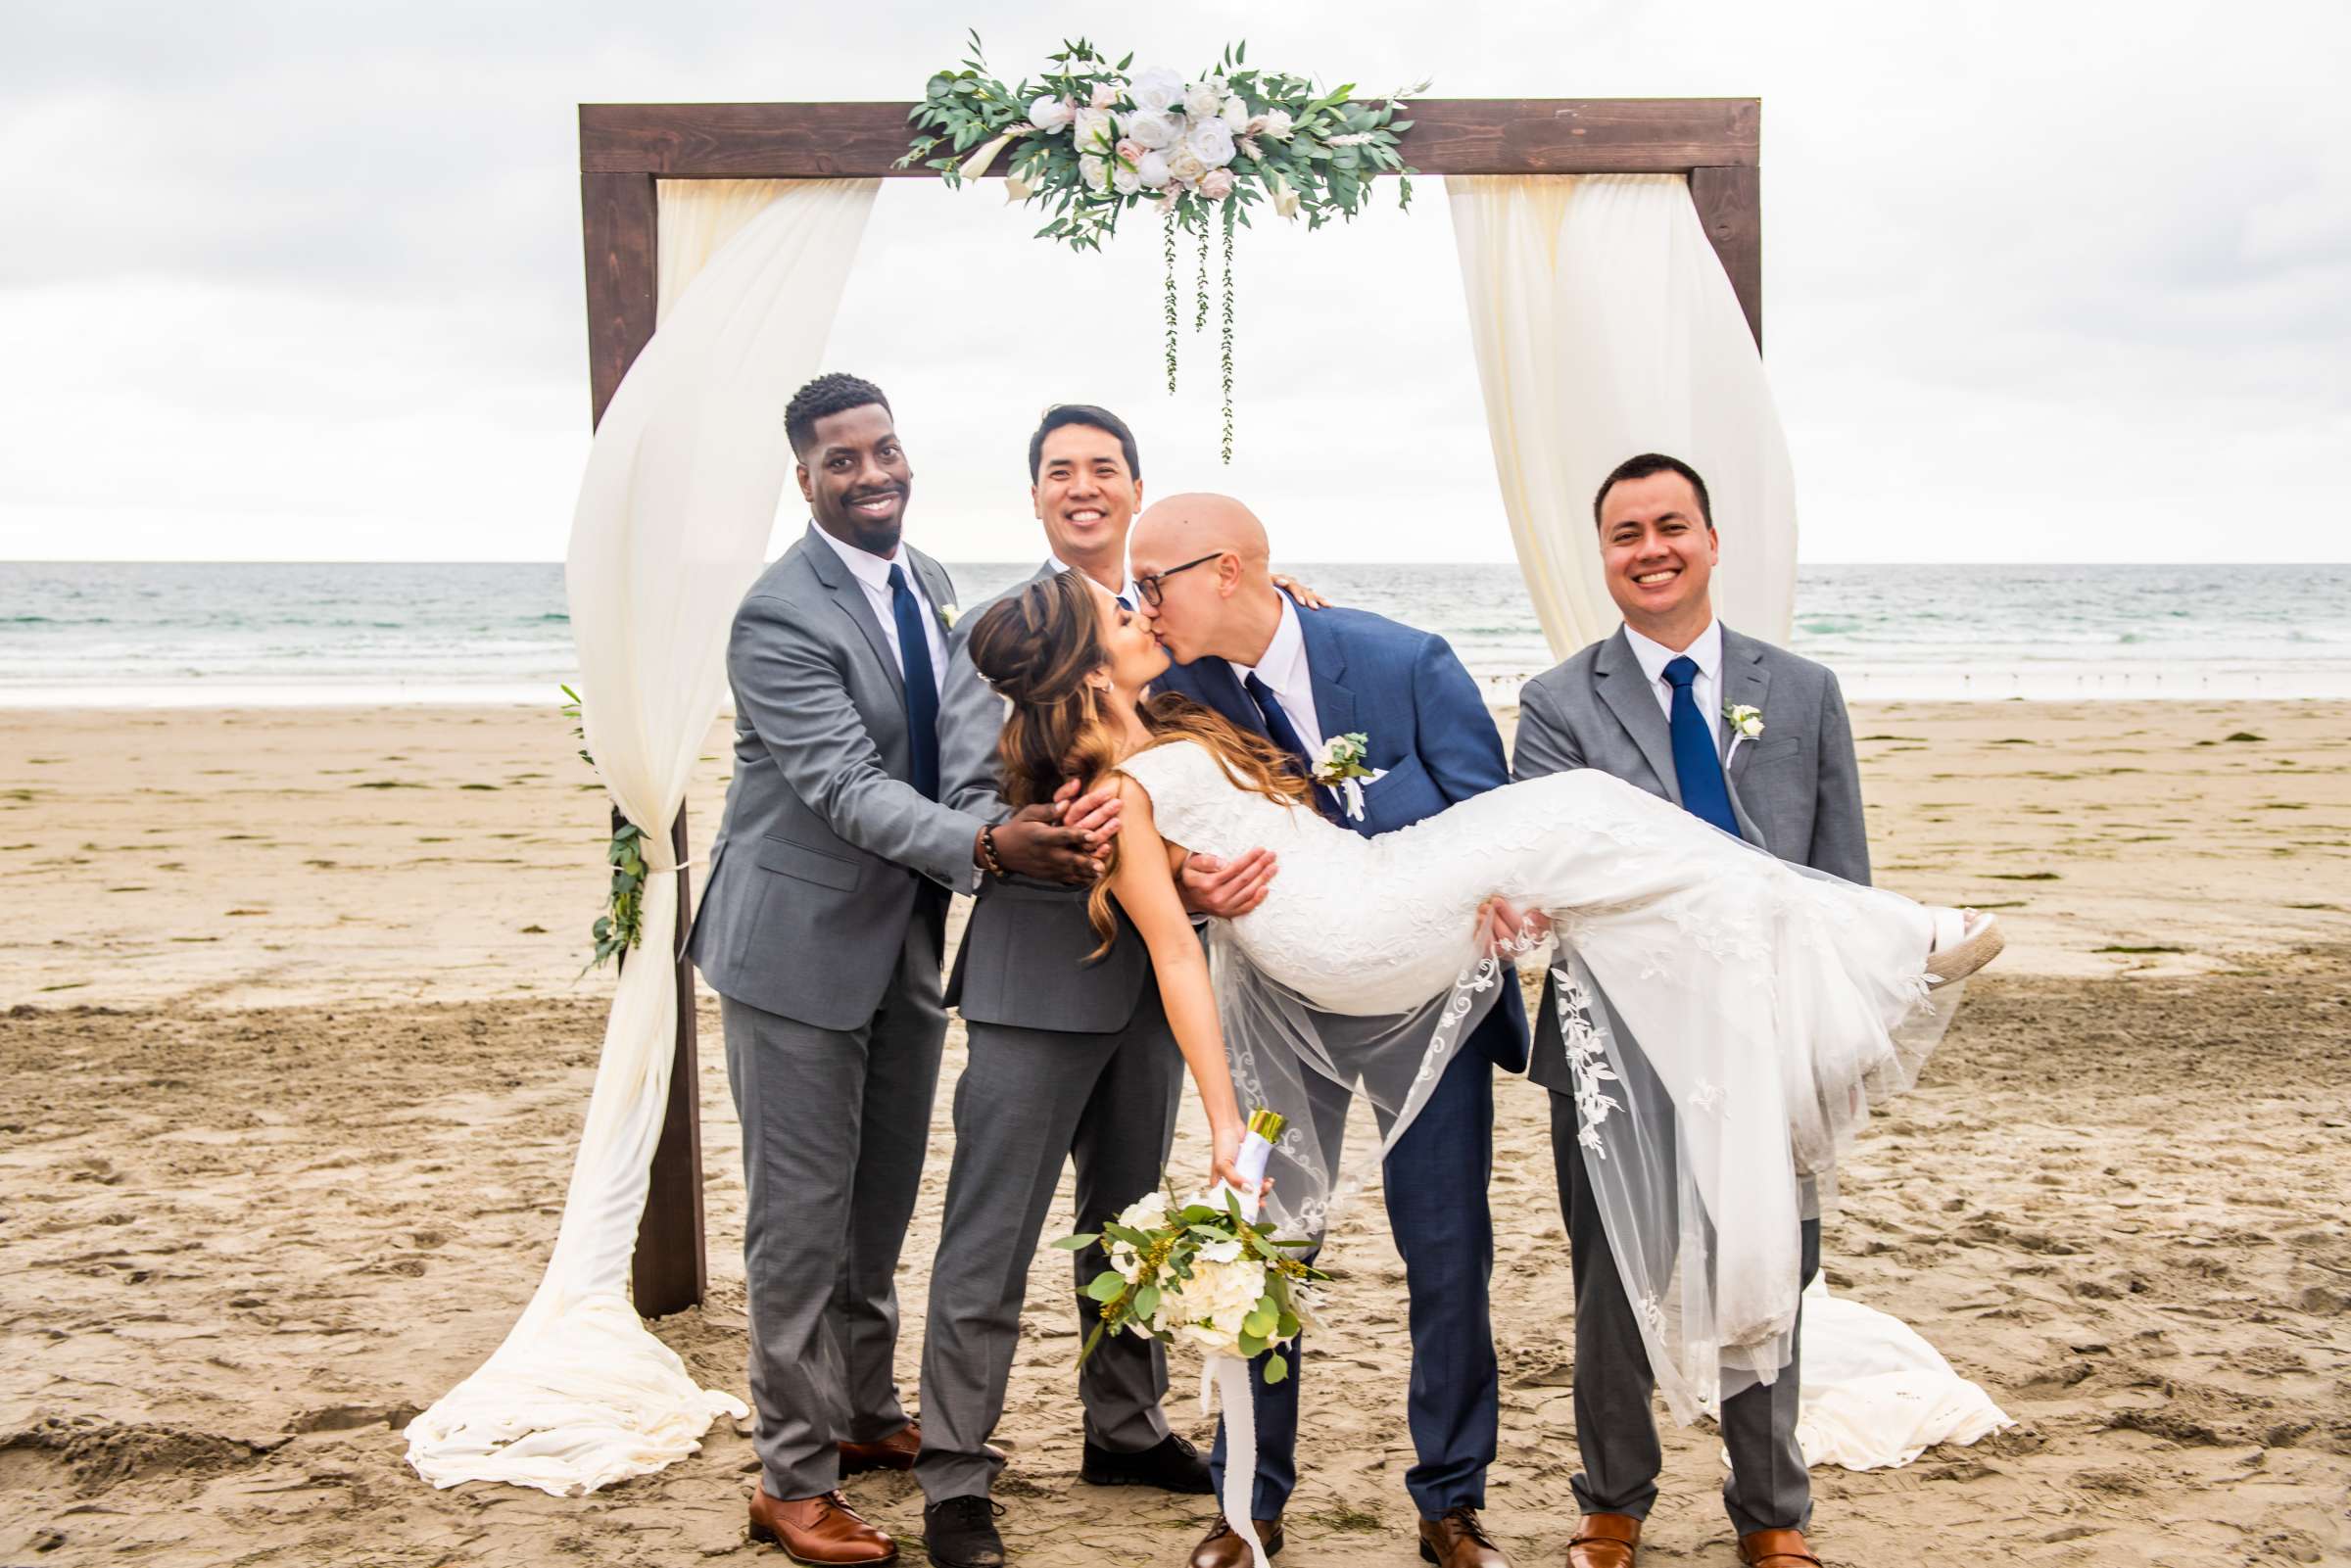 La Jolla Shores Hotel Wedding, Kim and Evan Wedding Photo #16 by True Photography